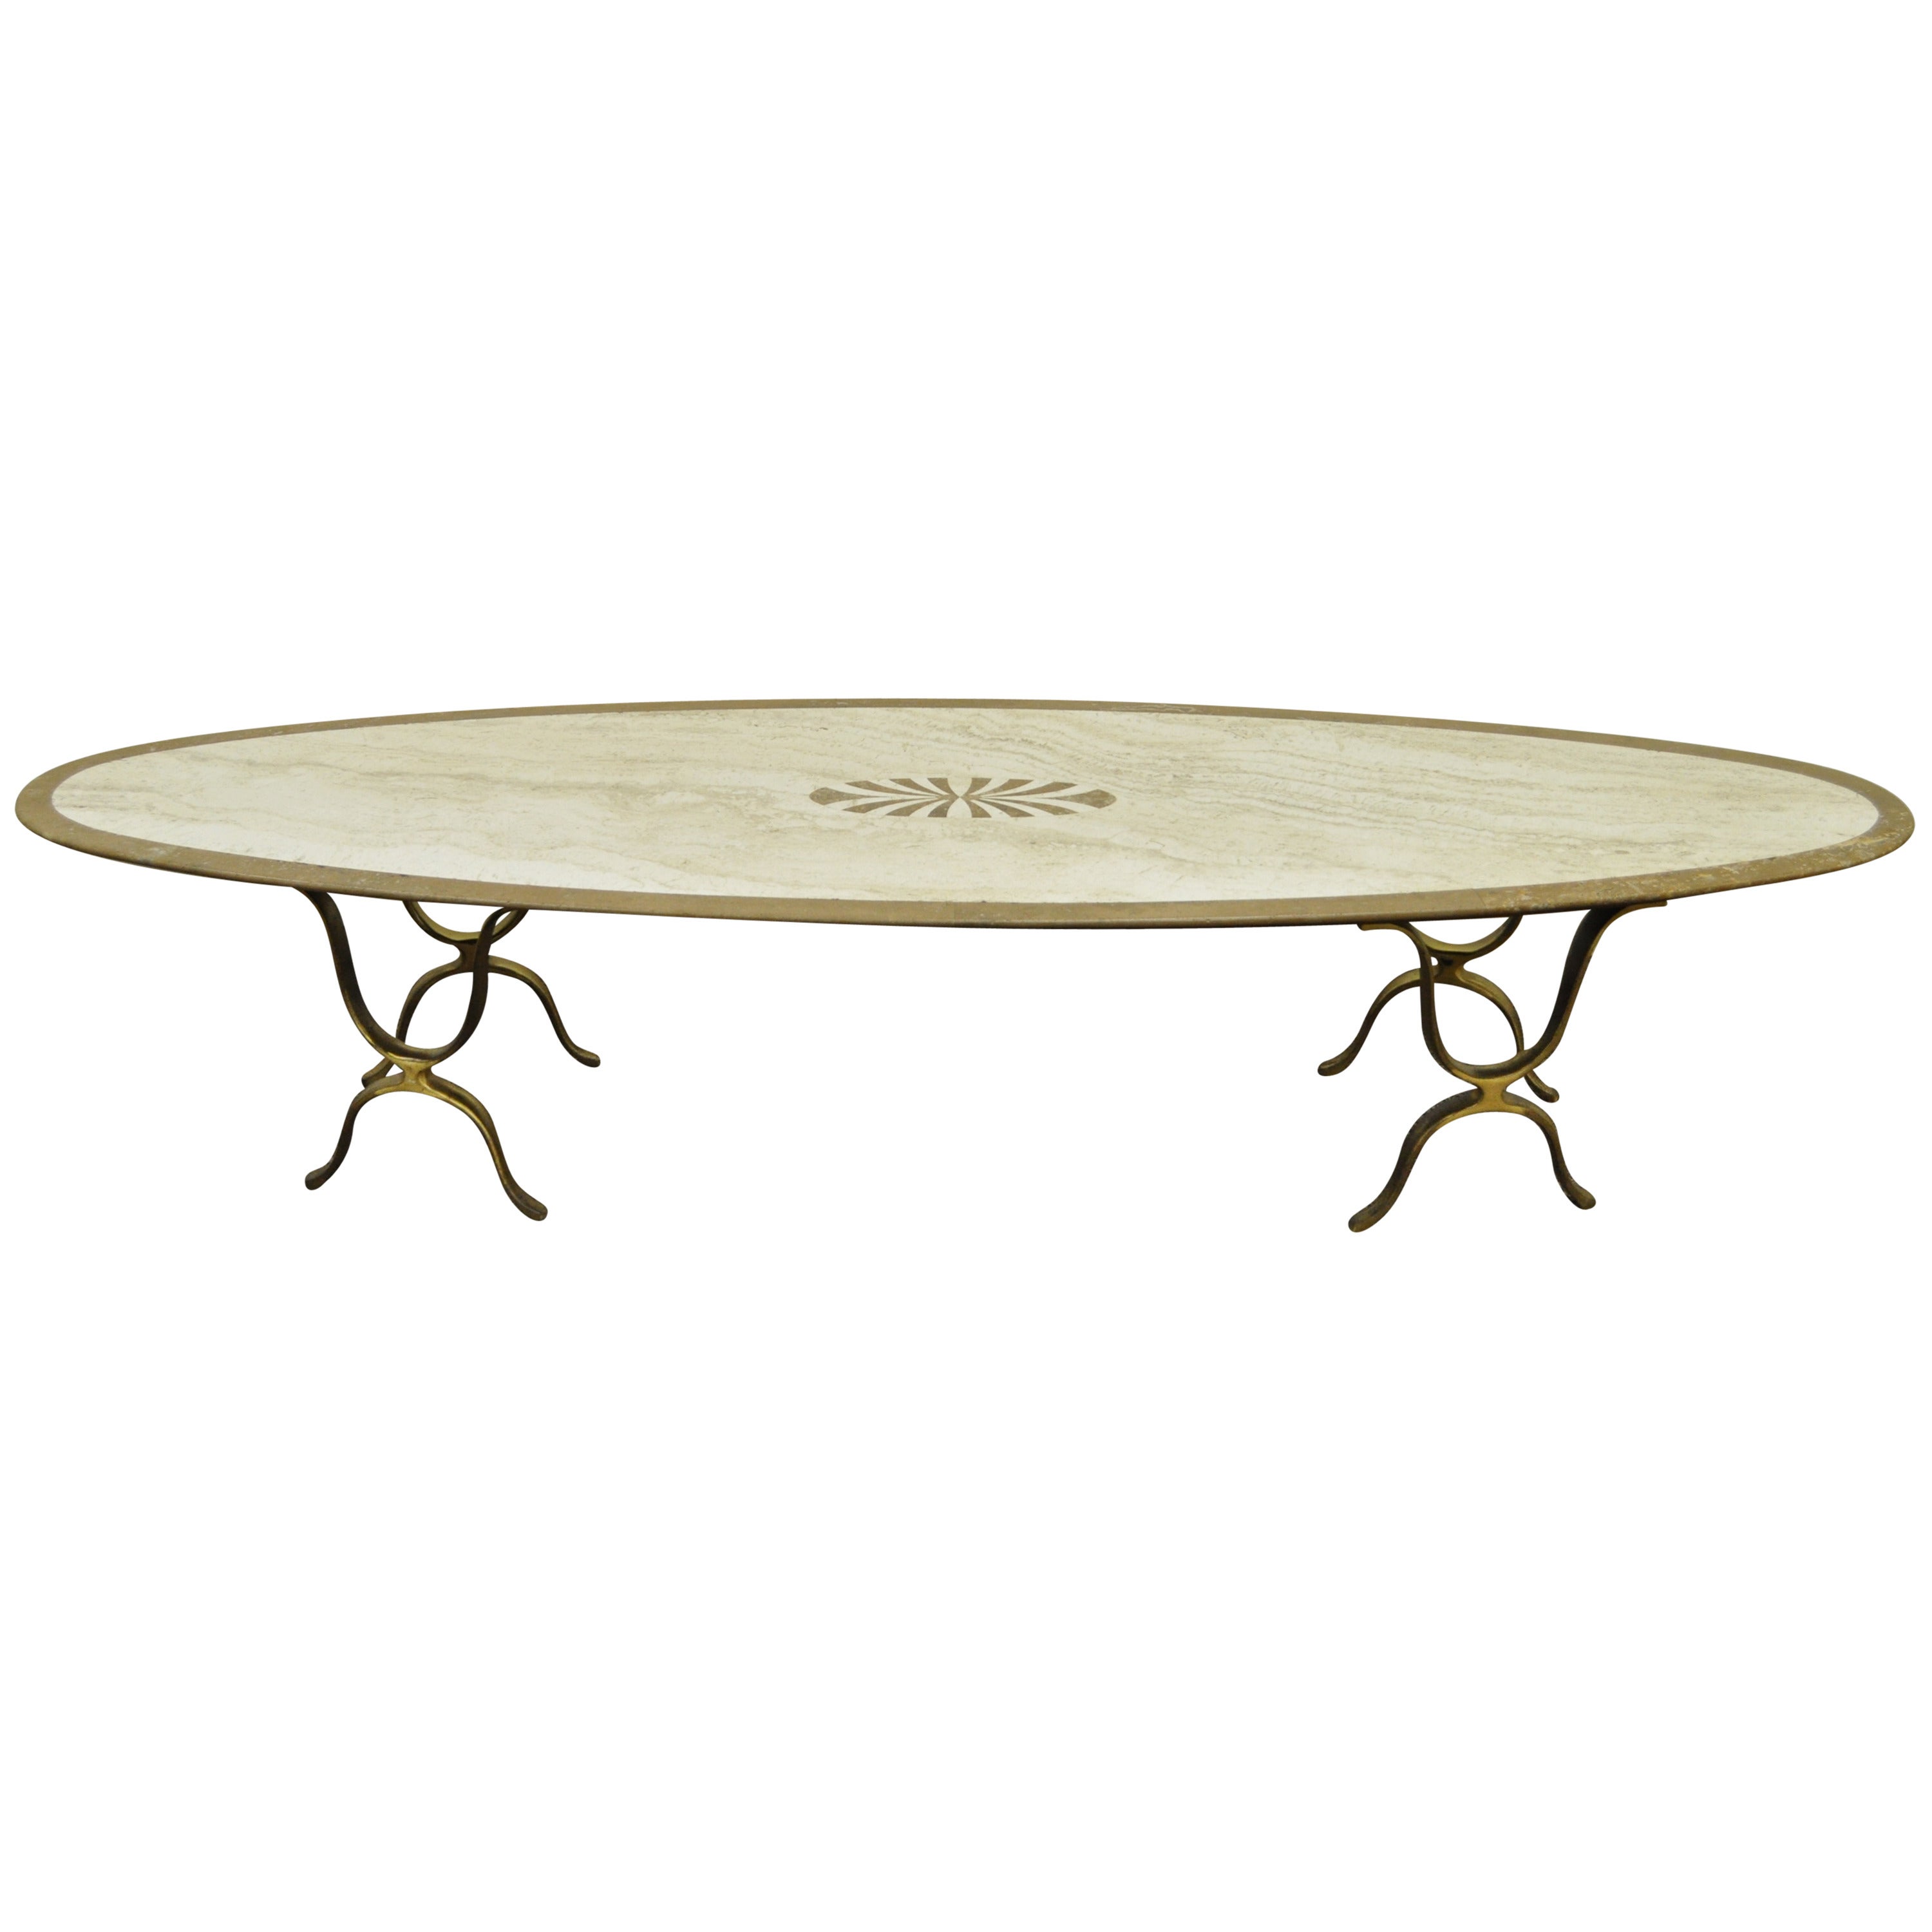 Table basse ovale italienne Hollywood Regency en travertin et laiton pour planches de surf